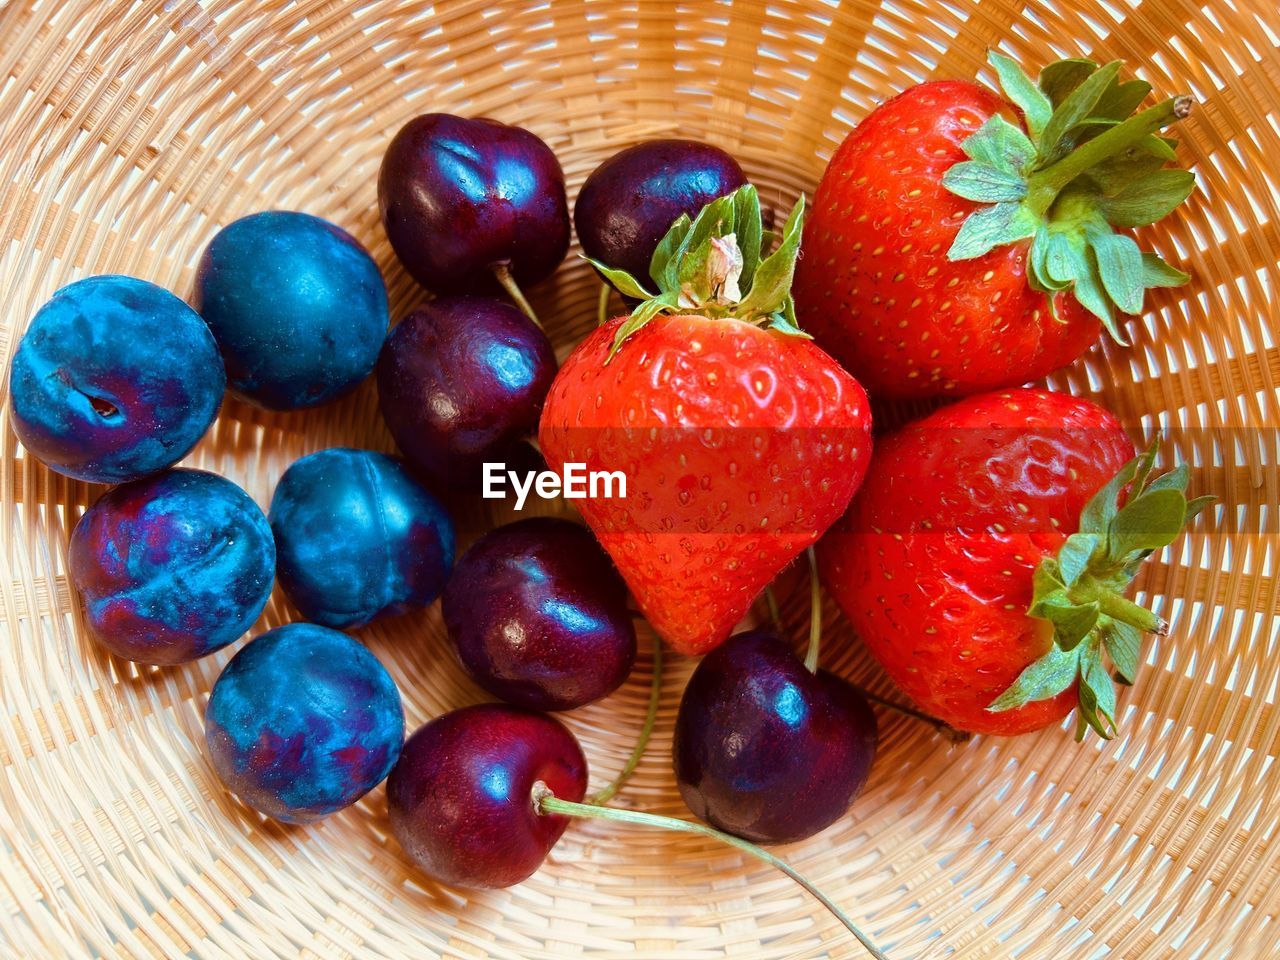 Strawberries, plums, cherries in basket. fresh, colourful, juicy, sweet, nutritious, summer fruit.